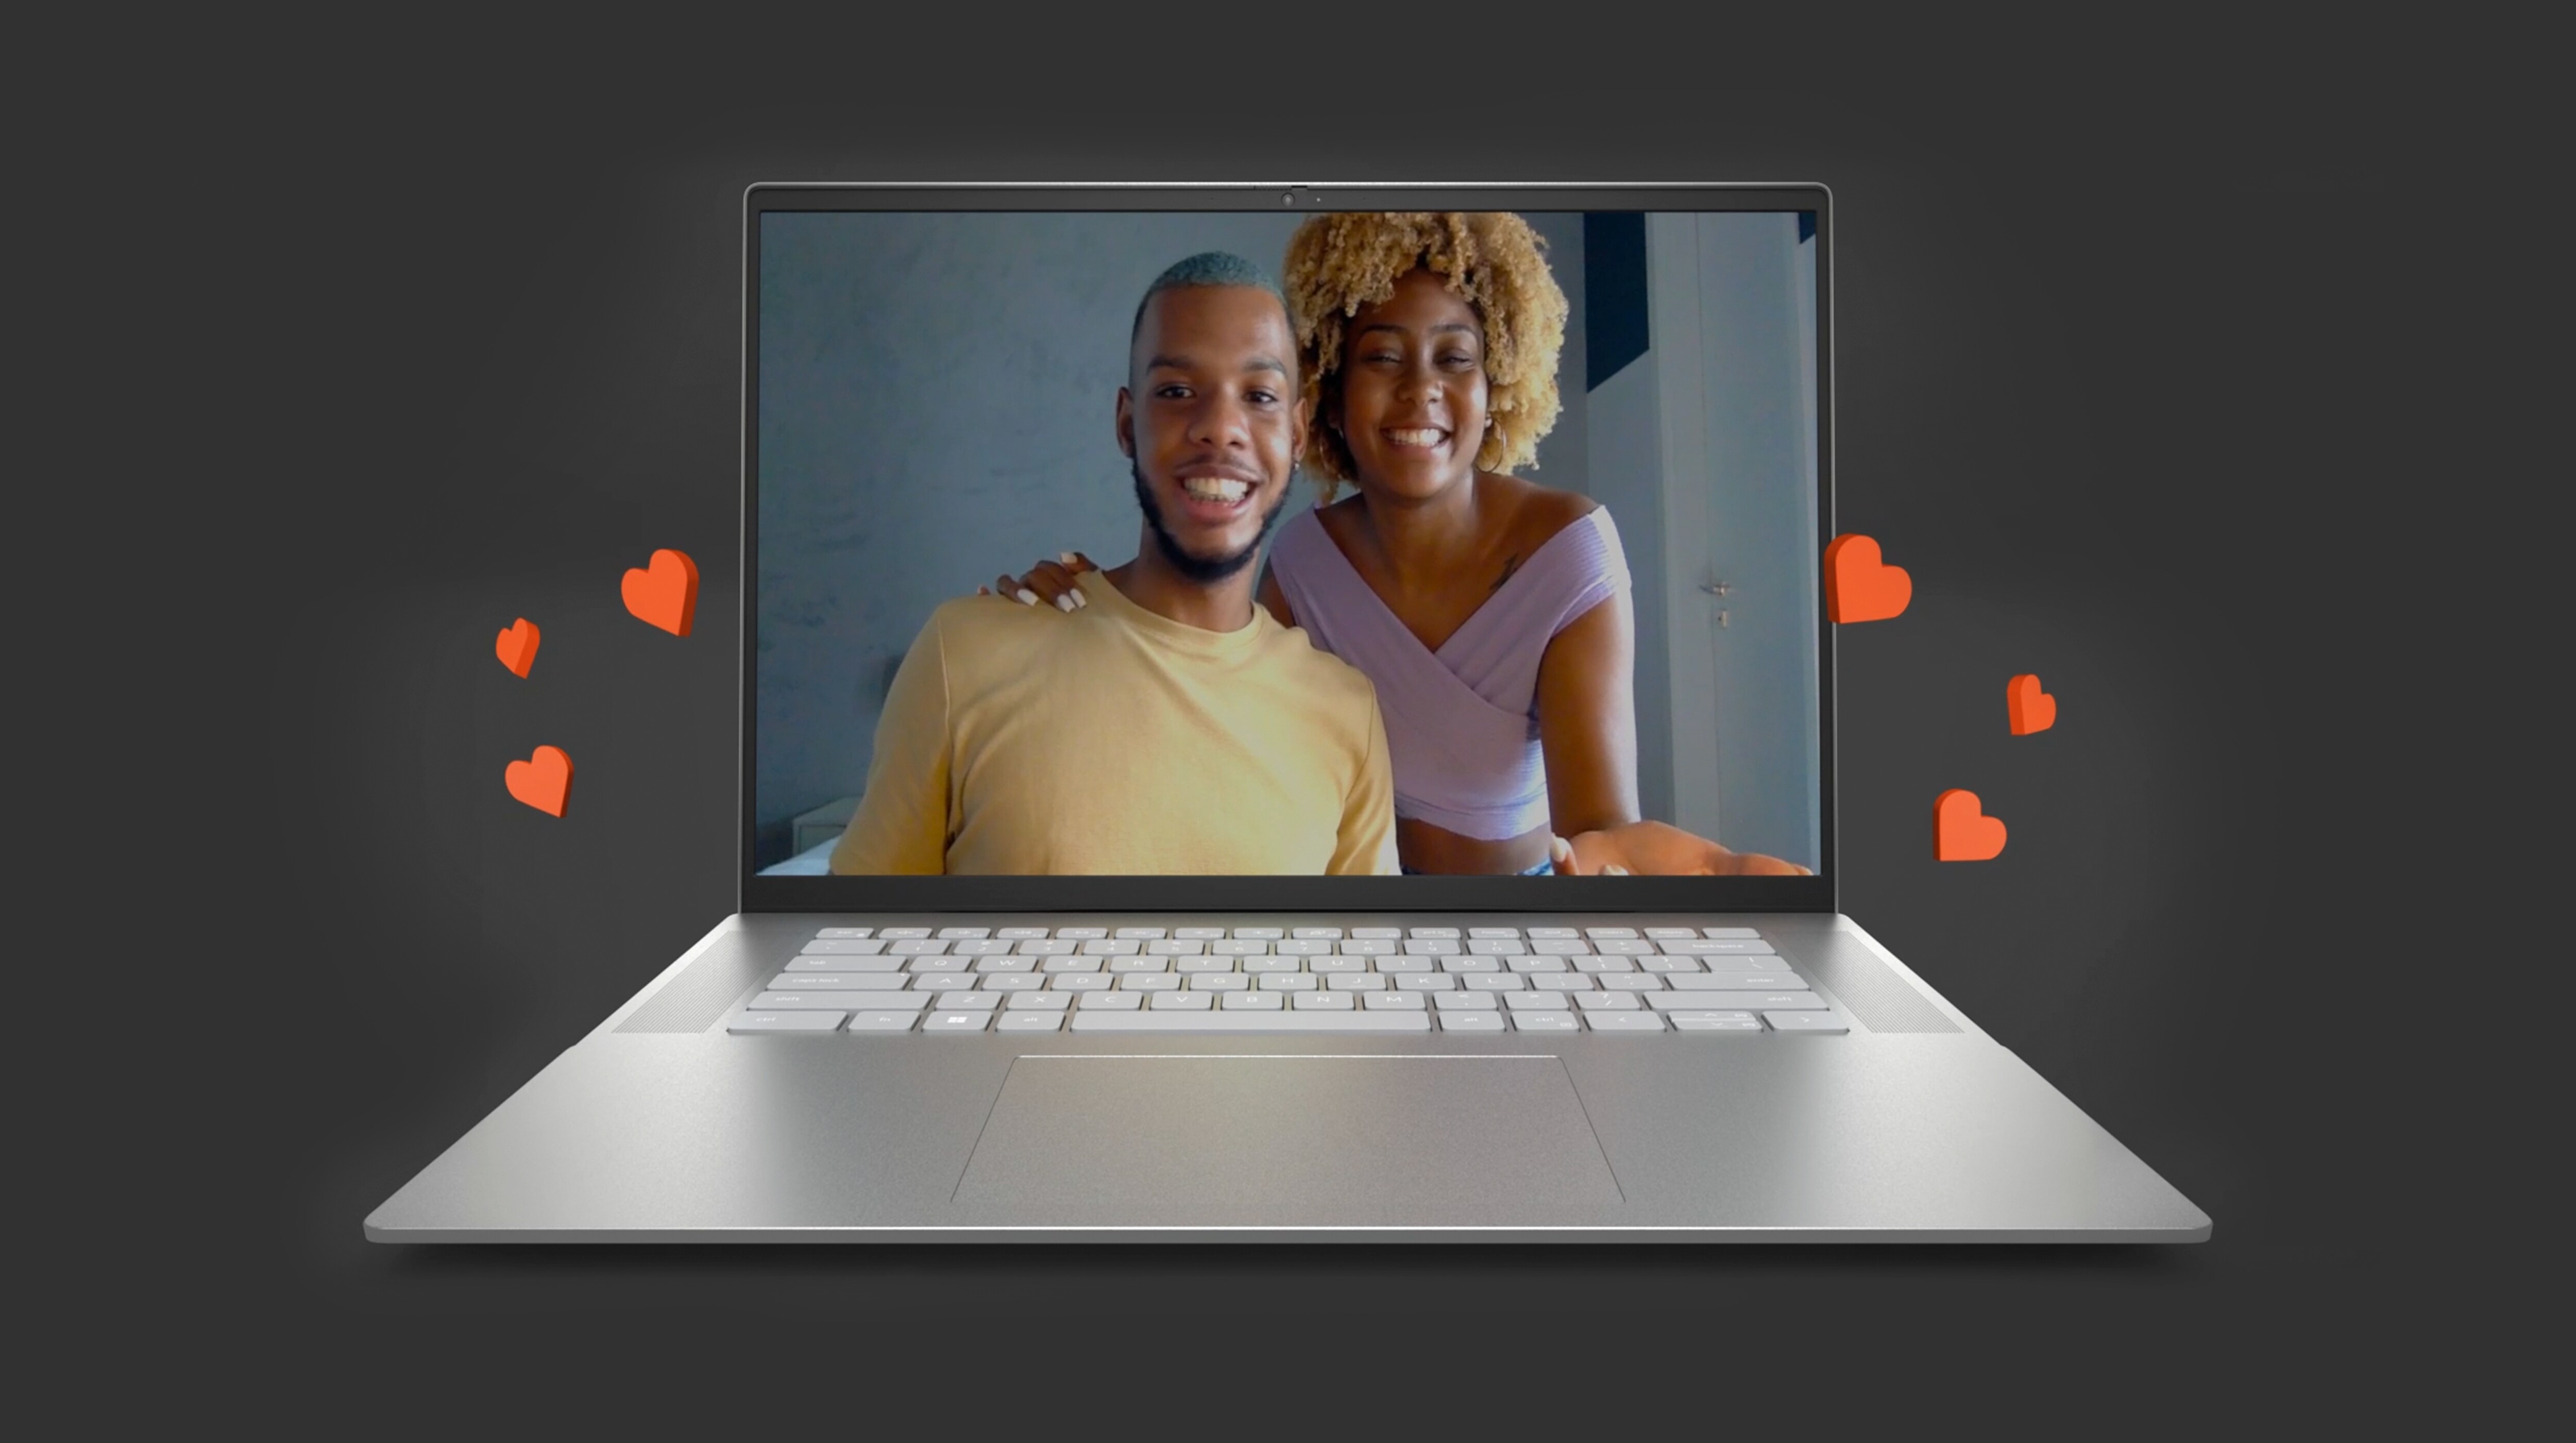 男性と女性が並び、赤いハートが画面から浮かび上がっているDell Inspiron 16 5620ノートパソコンの画像。